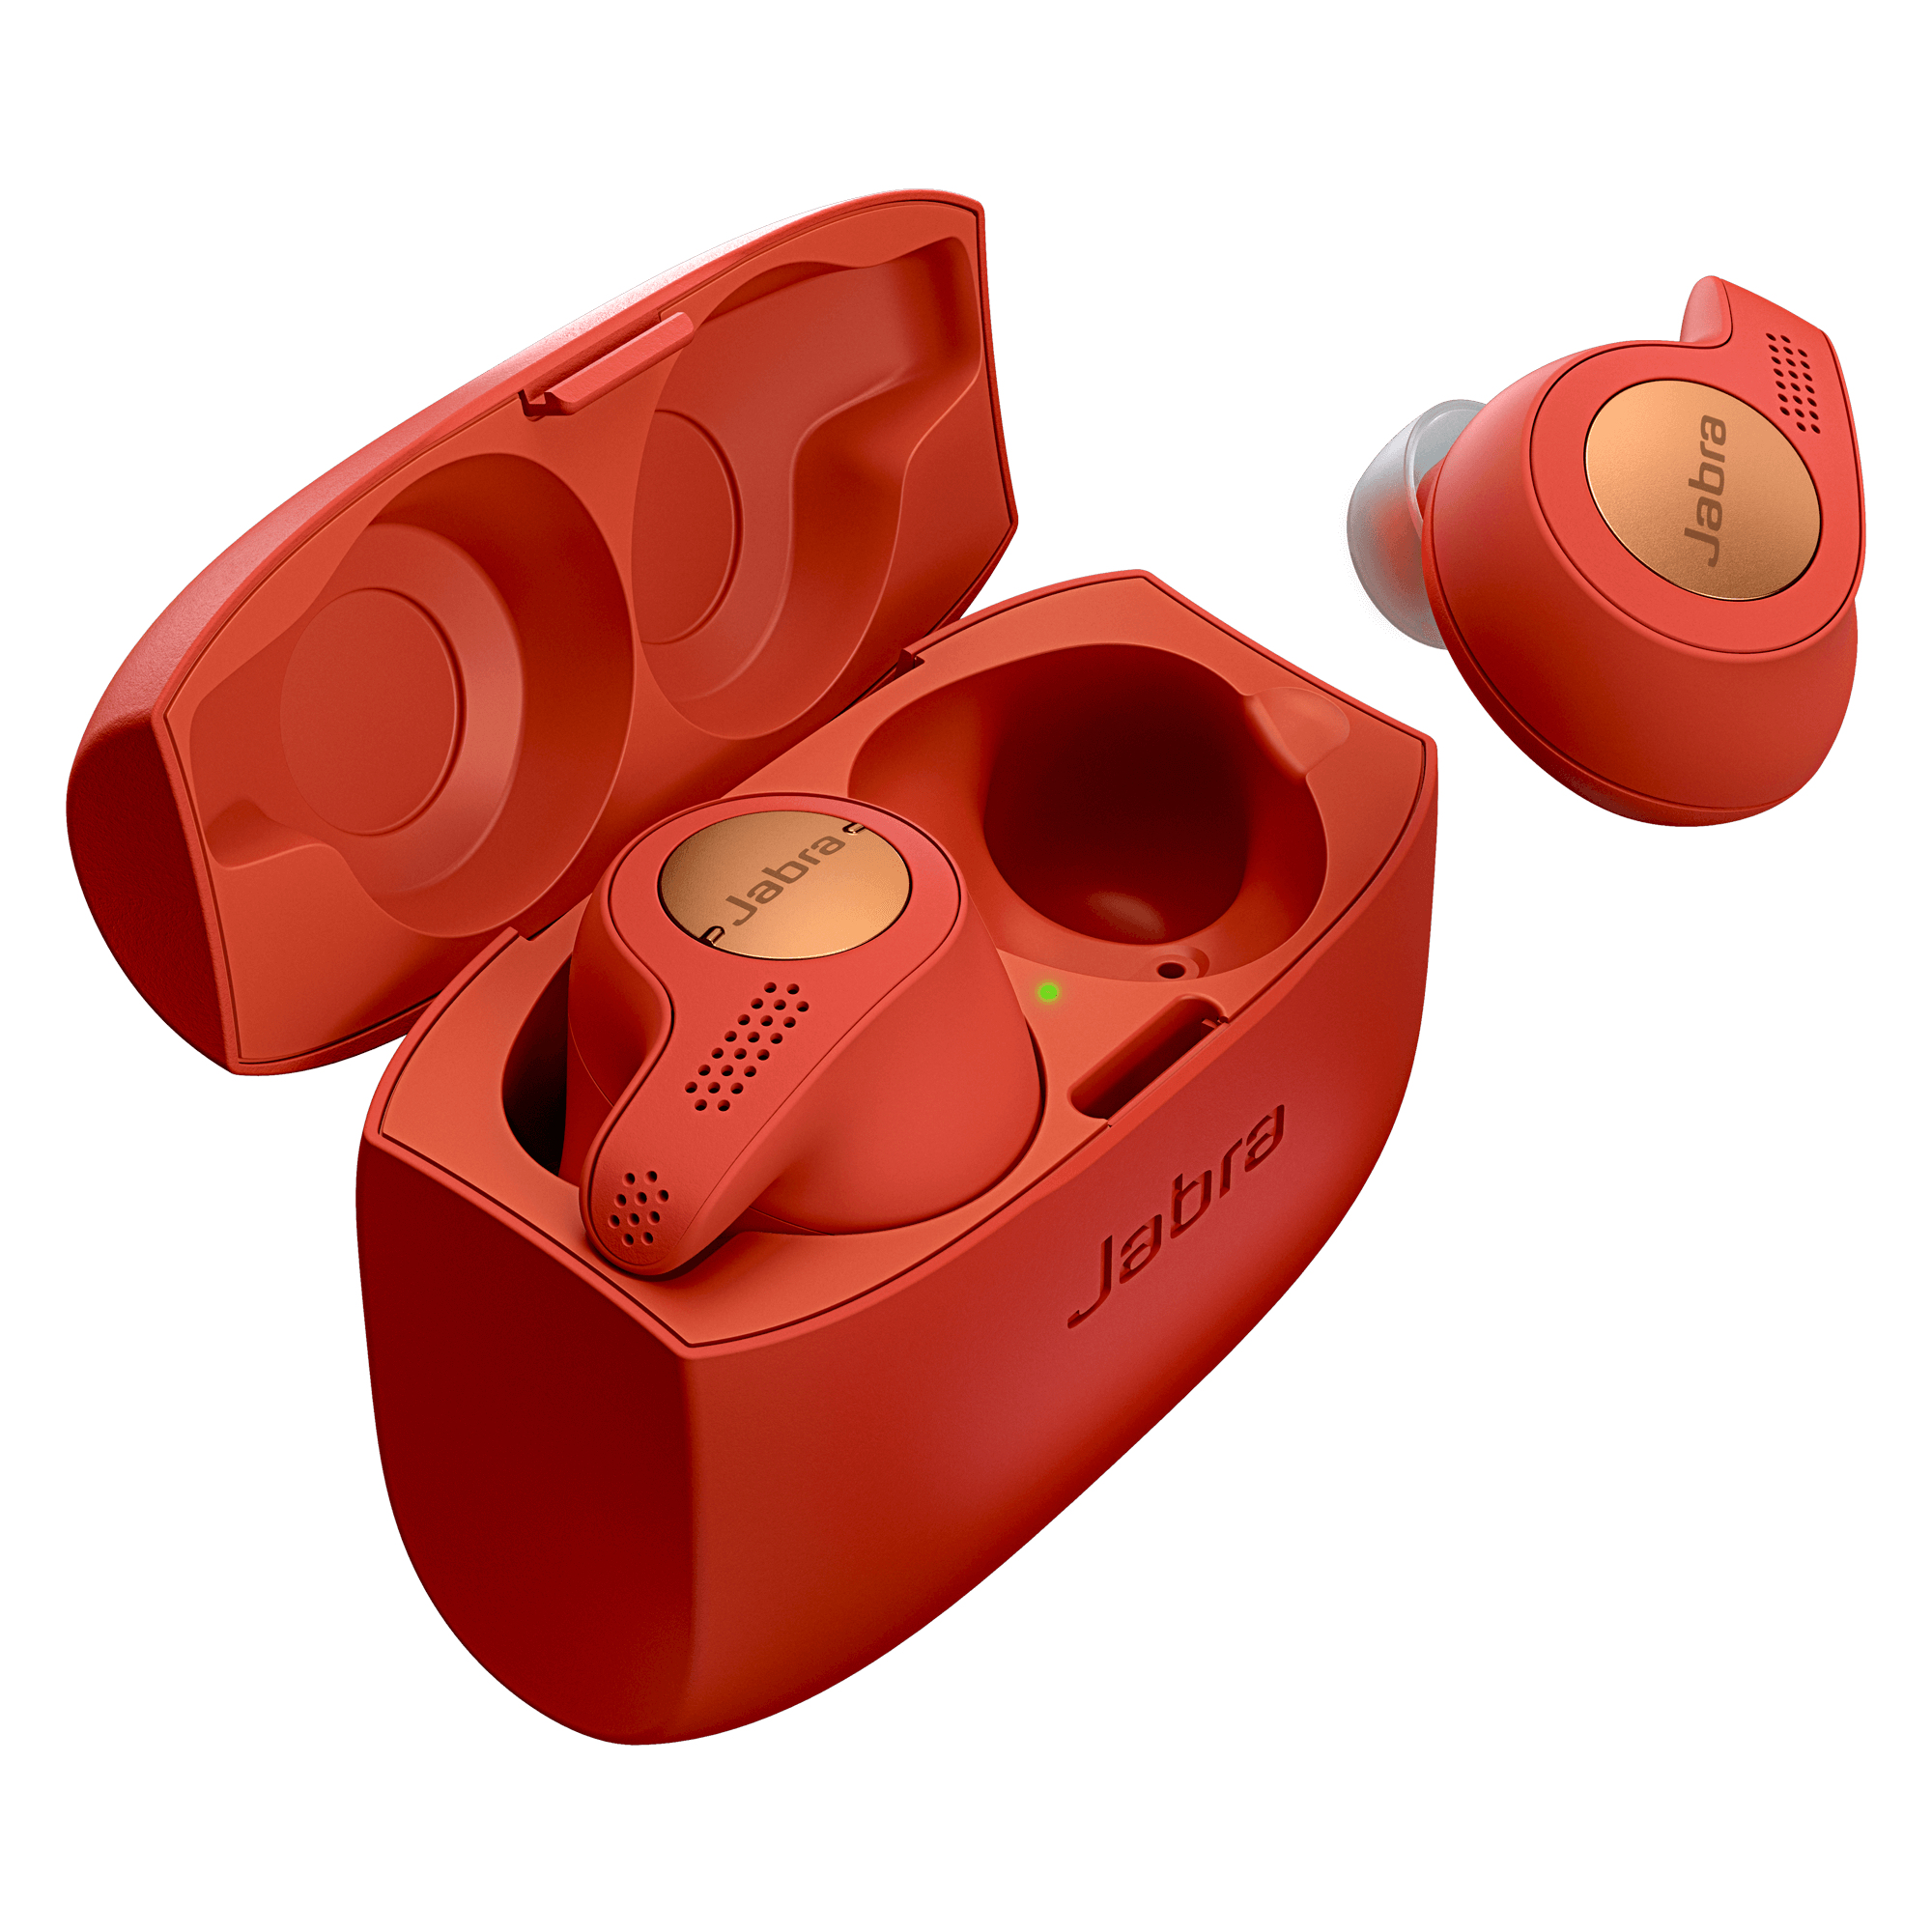 Jabra Elite Active 65t Copper Red True Wireless Earbuds